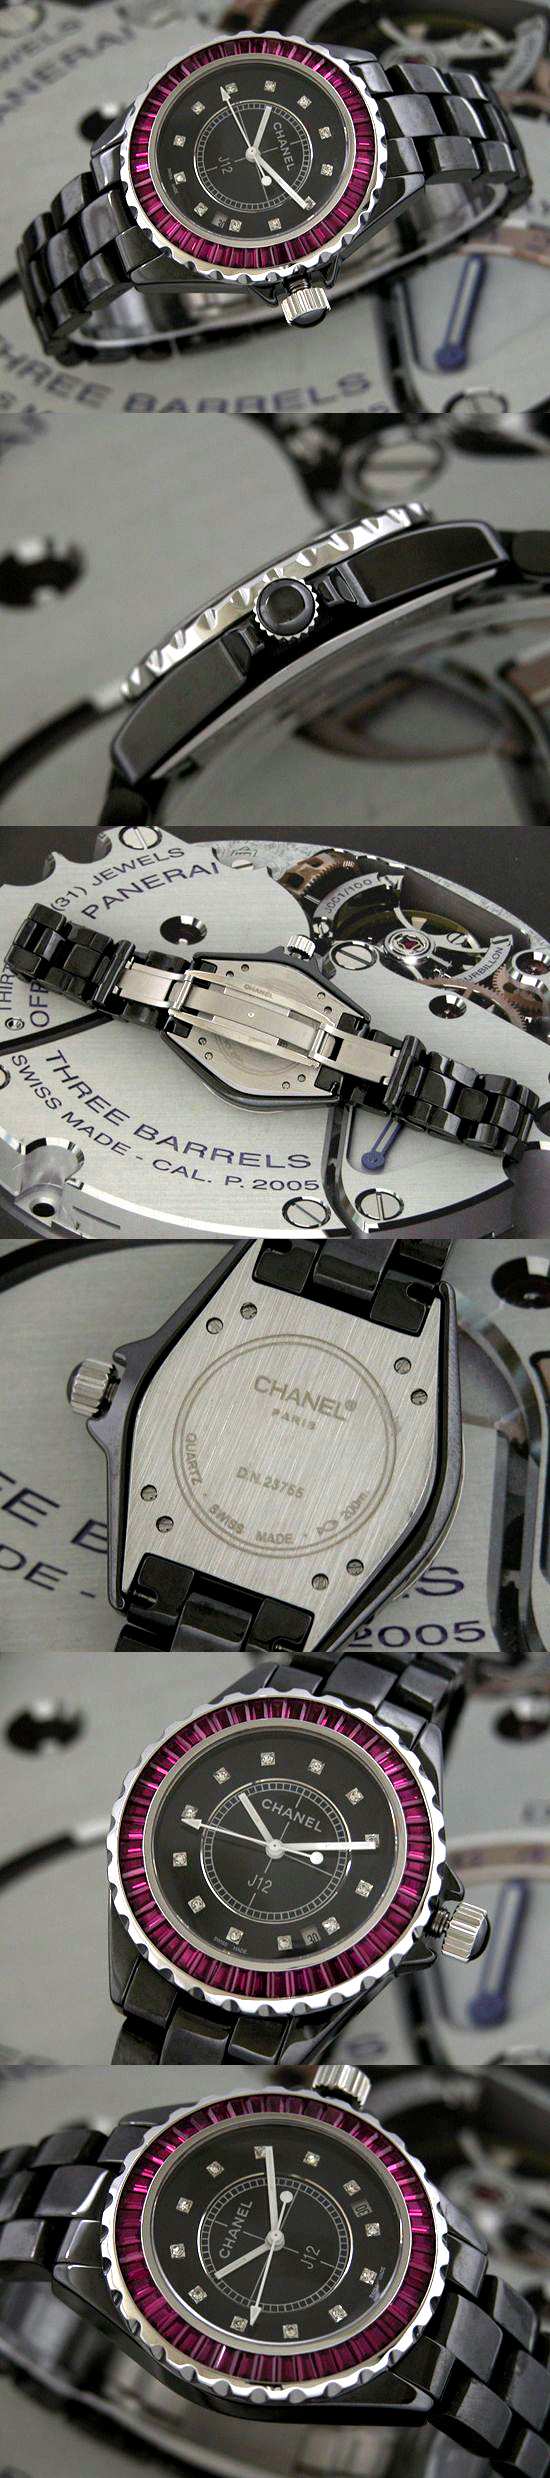 おしゃれなブランド時計がシャネル-CHANEL-H2017-as-J12-男性用を提供します.